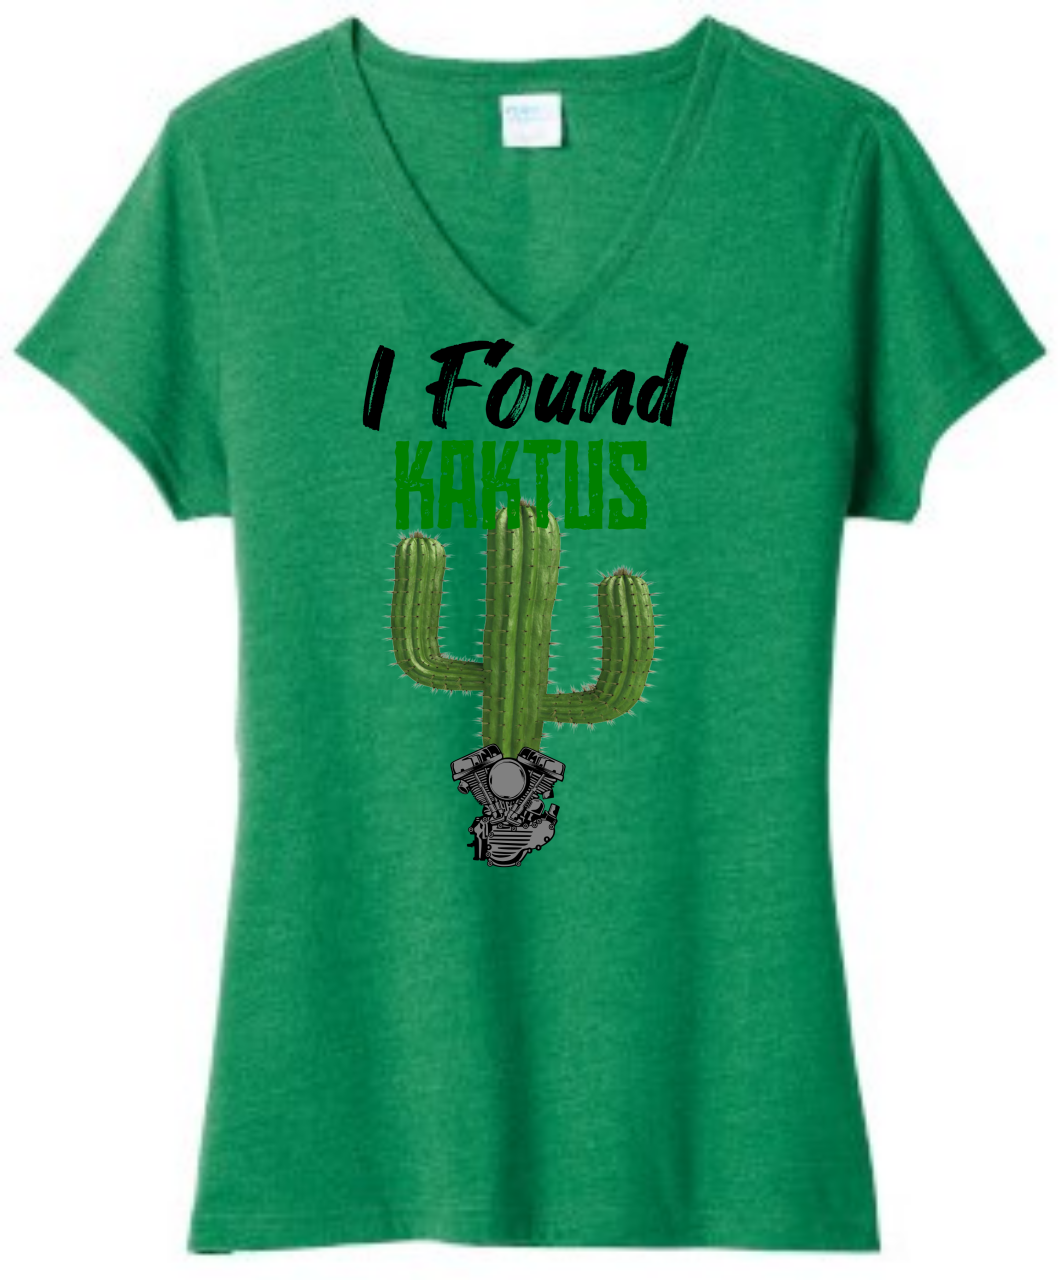 Picture of Kactus - I Found Kaktus - Ladies V-Neck